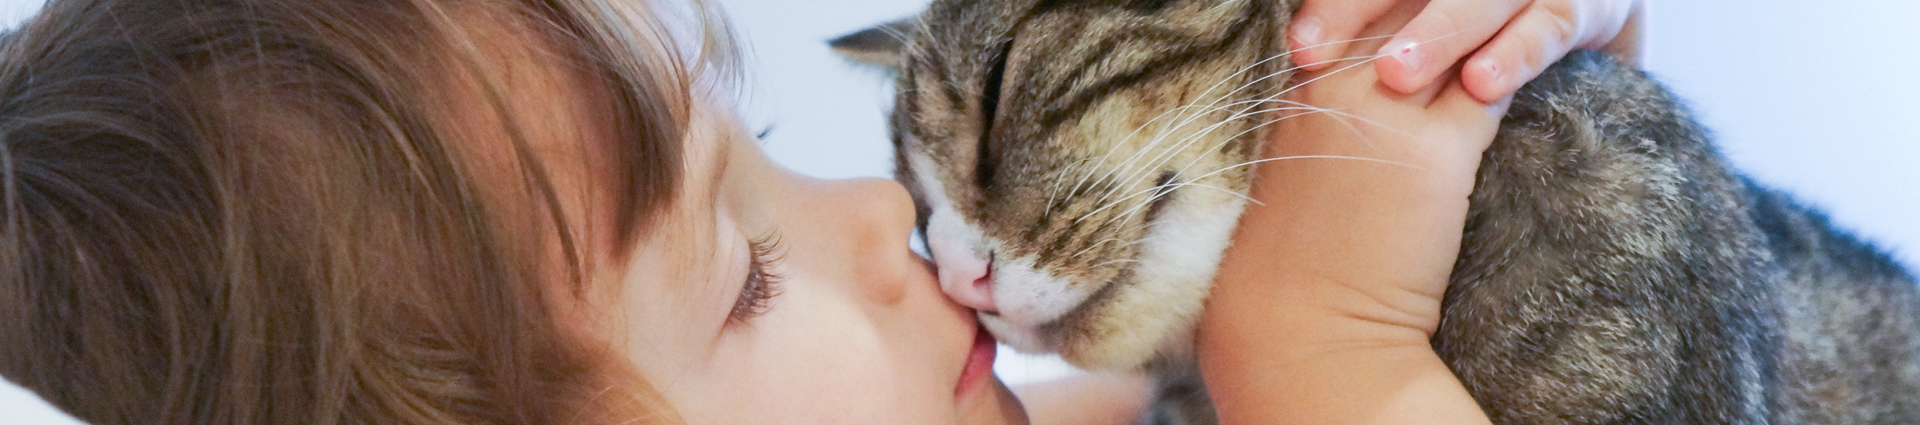 תקריב על ילדה מנשקת חתול אפור